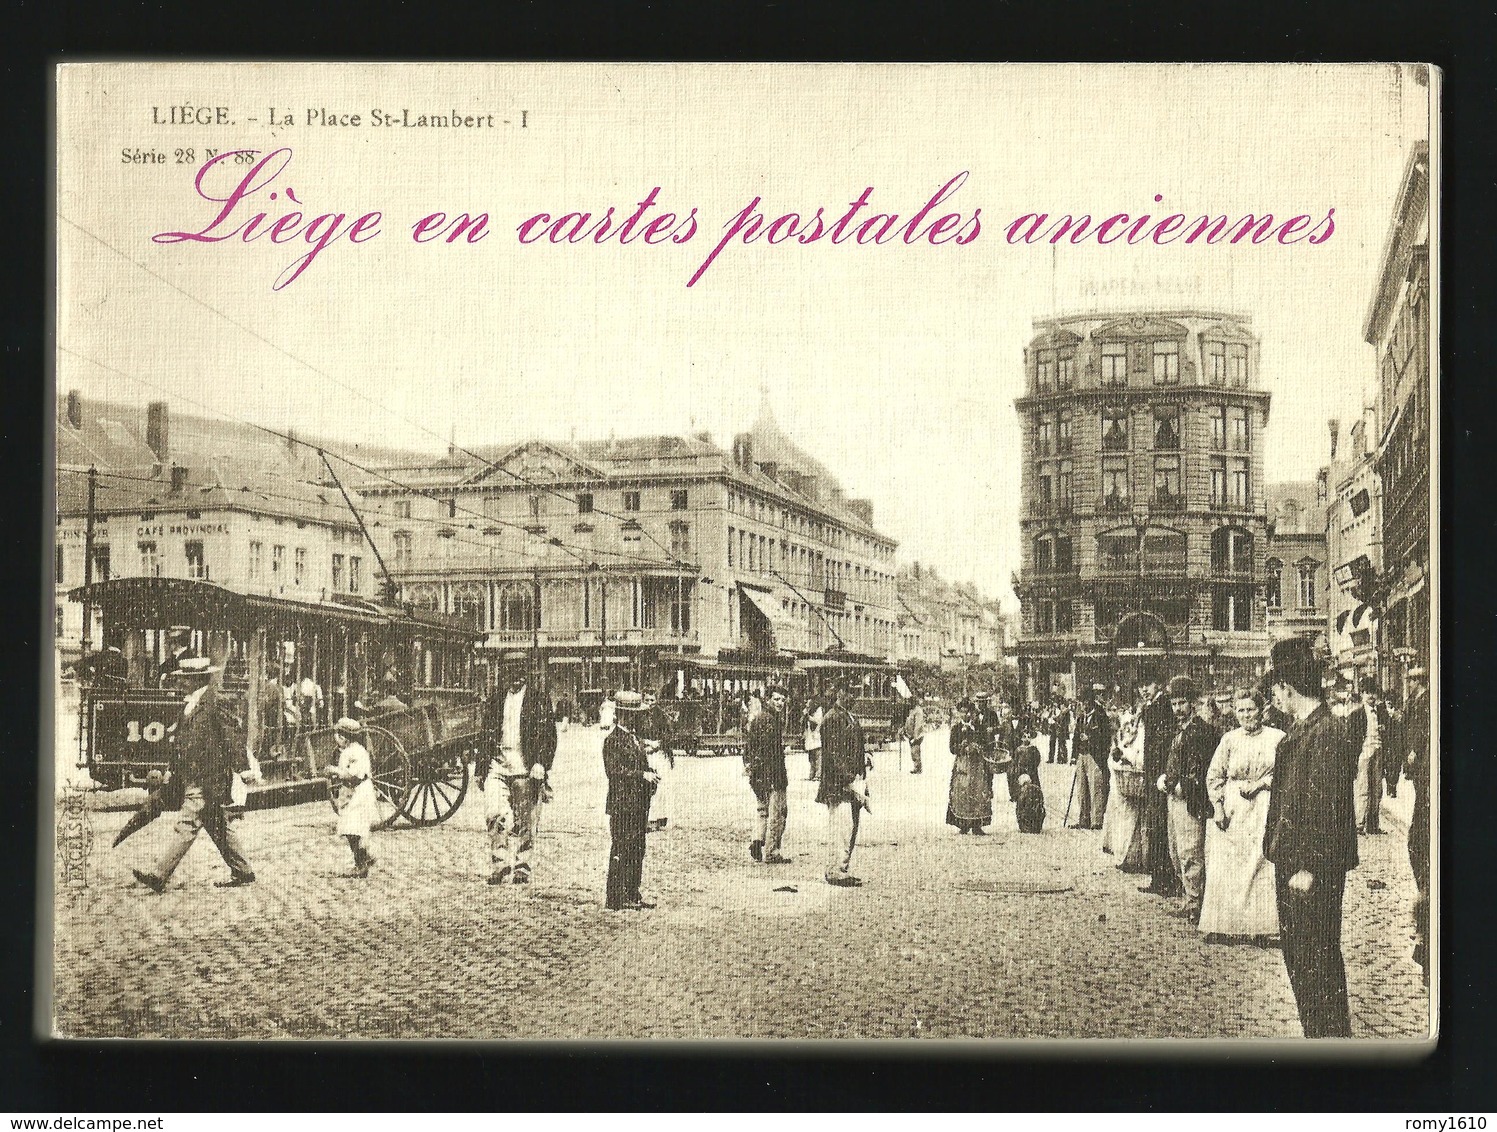 Liège En Cartes Postales Anciennes. Par J. Dubreucq. 156 Pages Illustrées Et Commentées. 4 Scans. - Belgique